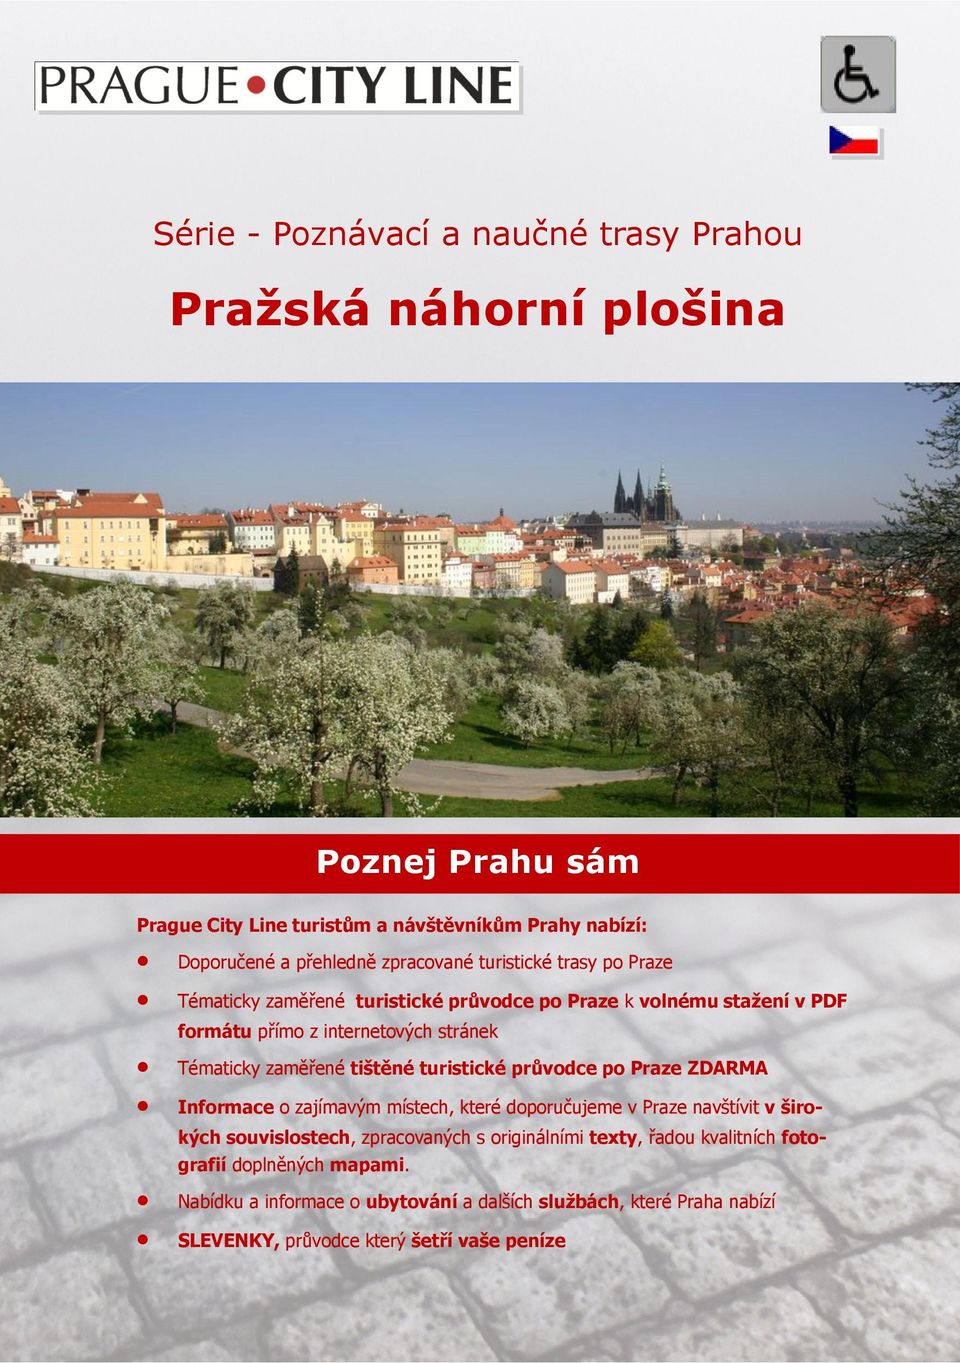 zaměřené tištěné turistické průvodce po Praze ZDARMA Informace o zajímavým místech, které doporučujeme v Praze navštívit v širokých souvislostech, zpracovaných s